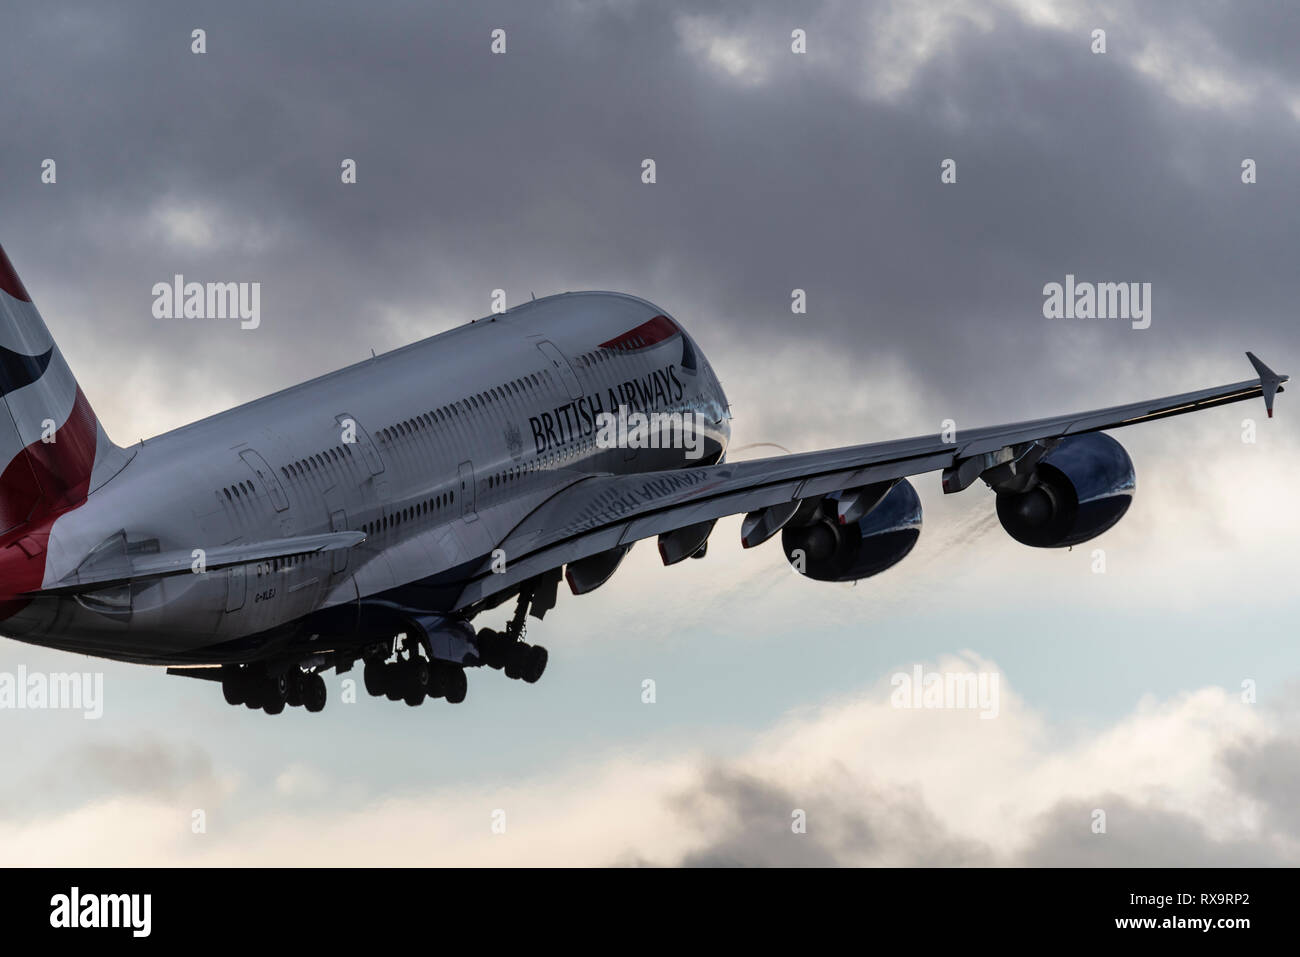 British Airways A380 Superjumbo-Jet-Flugzeug startet vom Flughafen London Heathrow bei schlechtem Wetter. Dunkle Regenwolken am Himmel Stockfoto